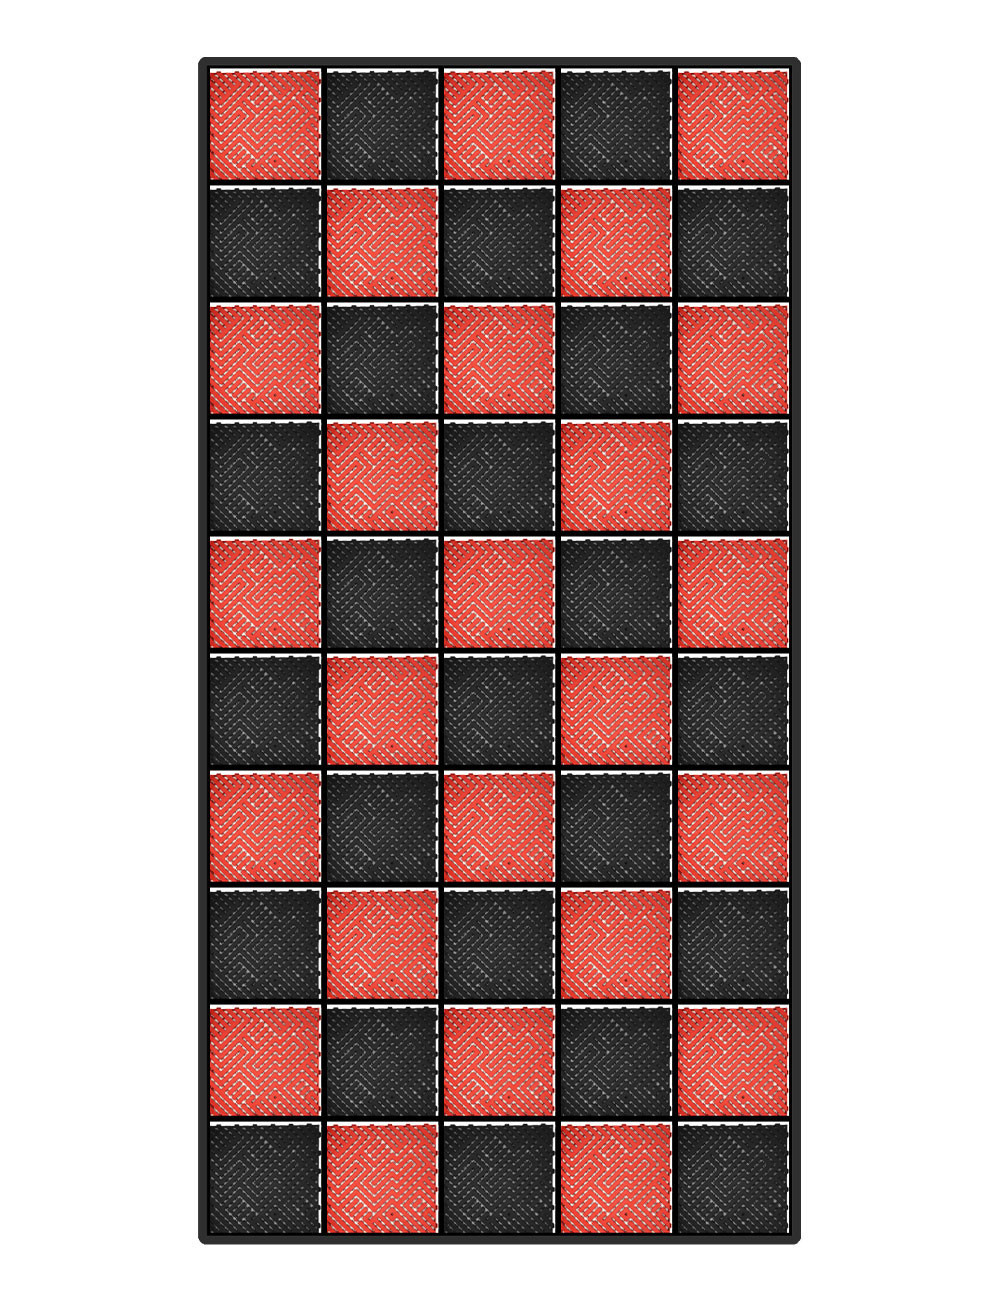 Kit dalles de sol damier pour voiture - 2 couleurs - 12m² - 2,5 m x 5 m - Rouge et noir